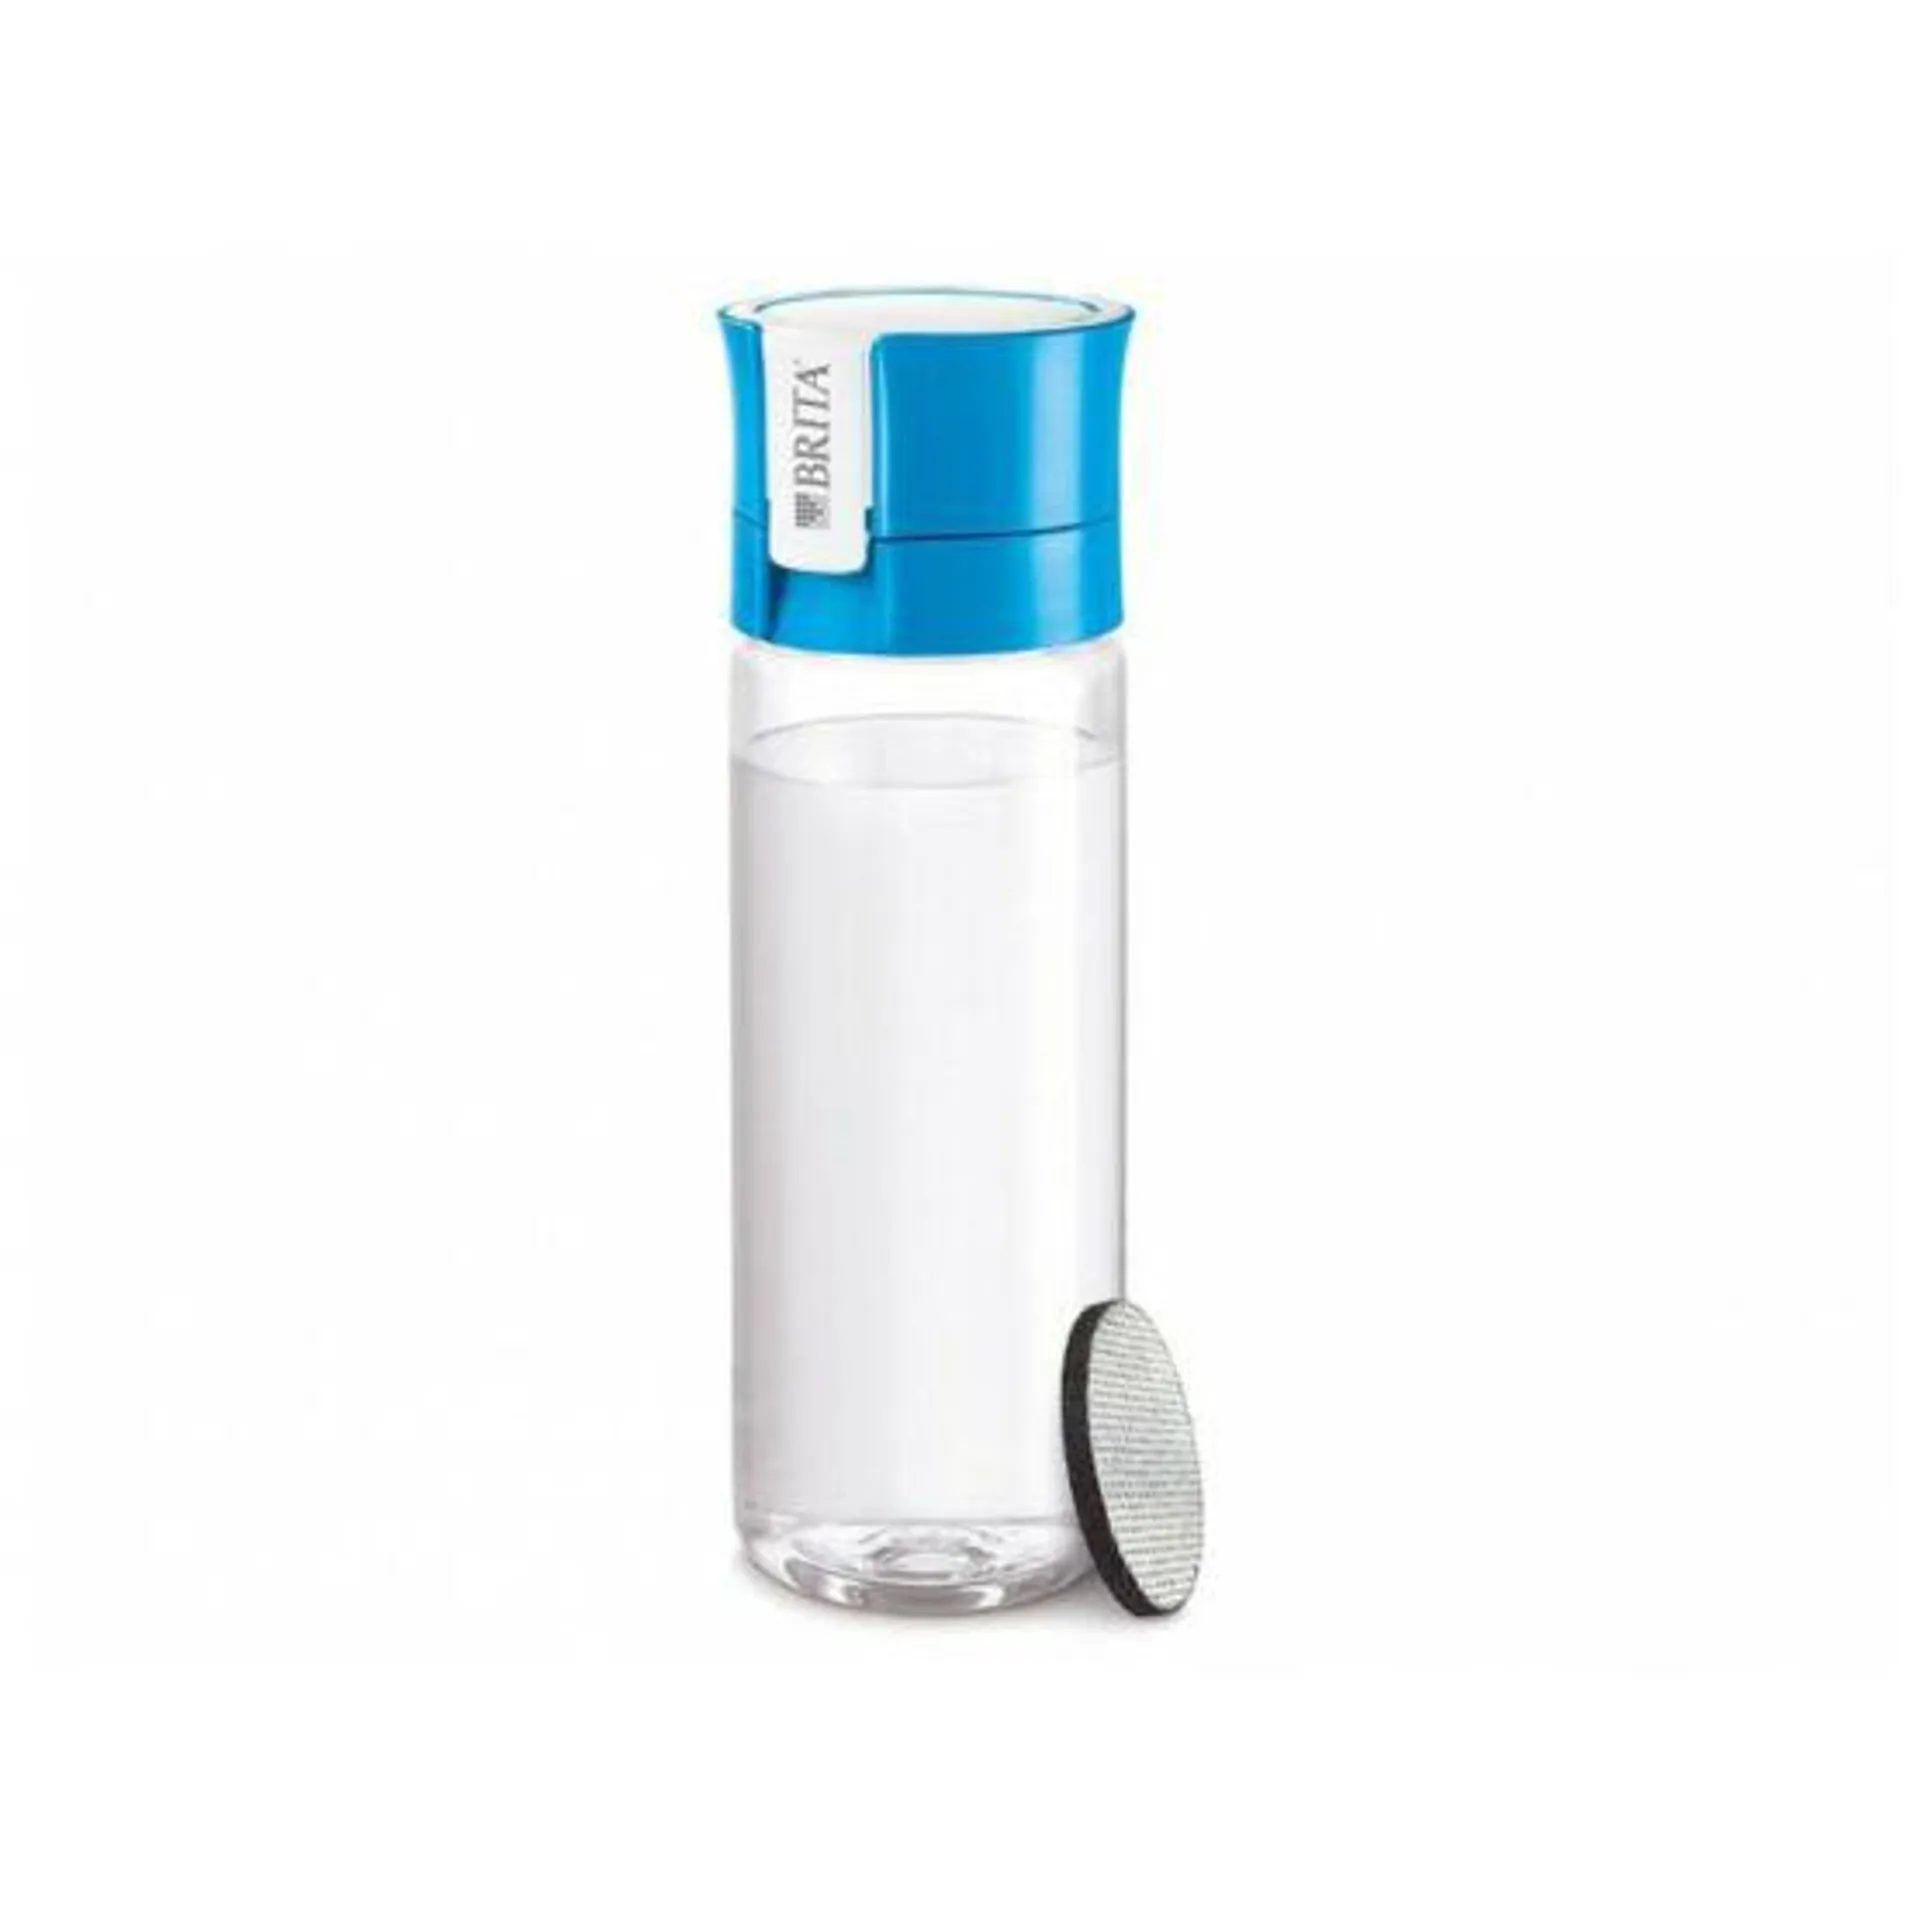 Brita Fill&Go Vital vízszűrő kulacs kék színben (600 ml)